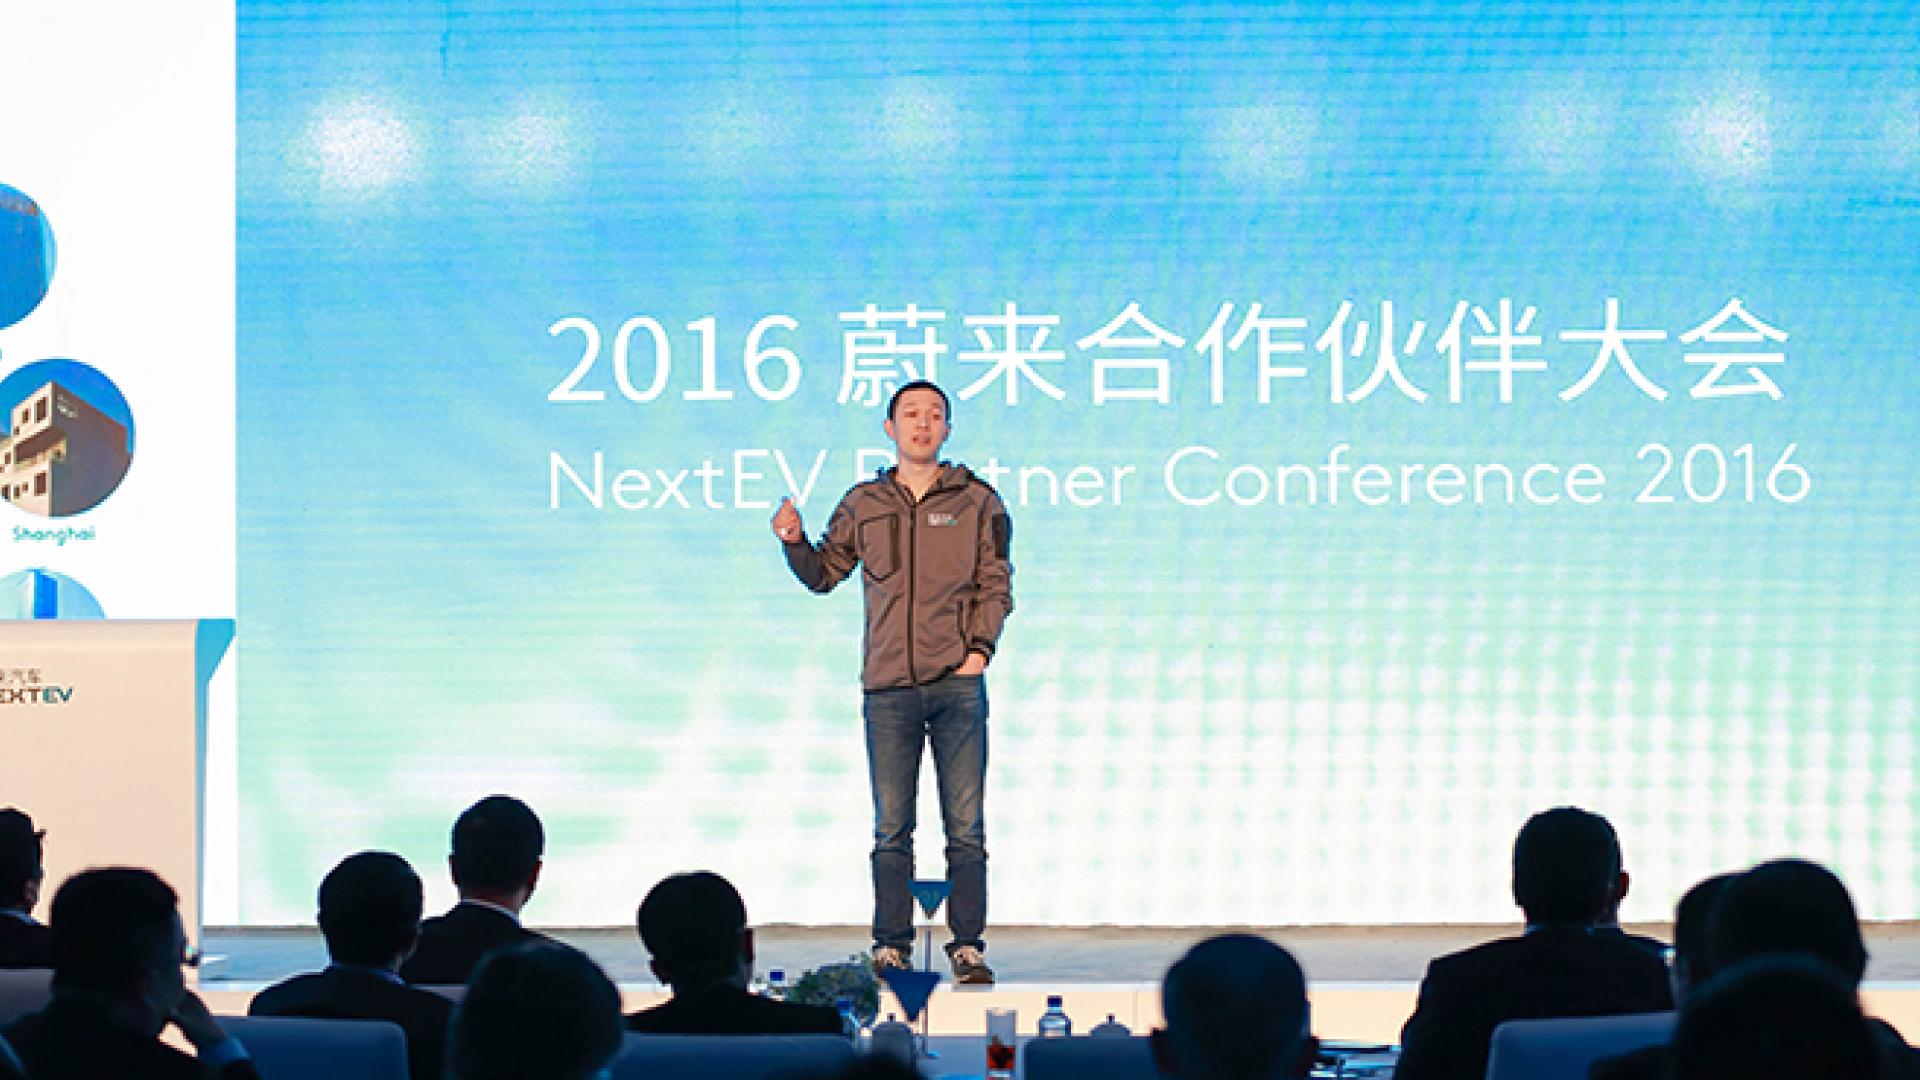 NextEV Partner Conference 2016 Held